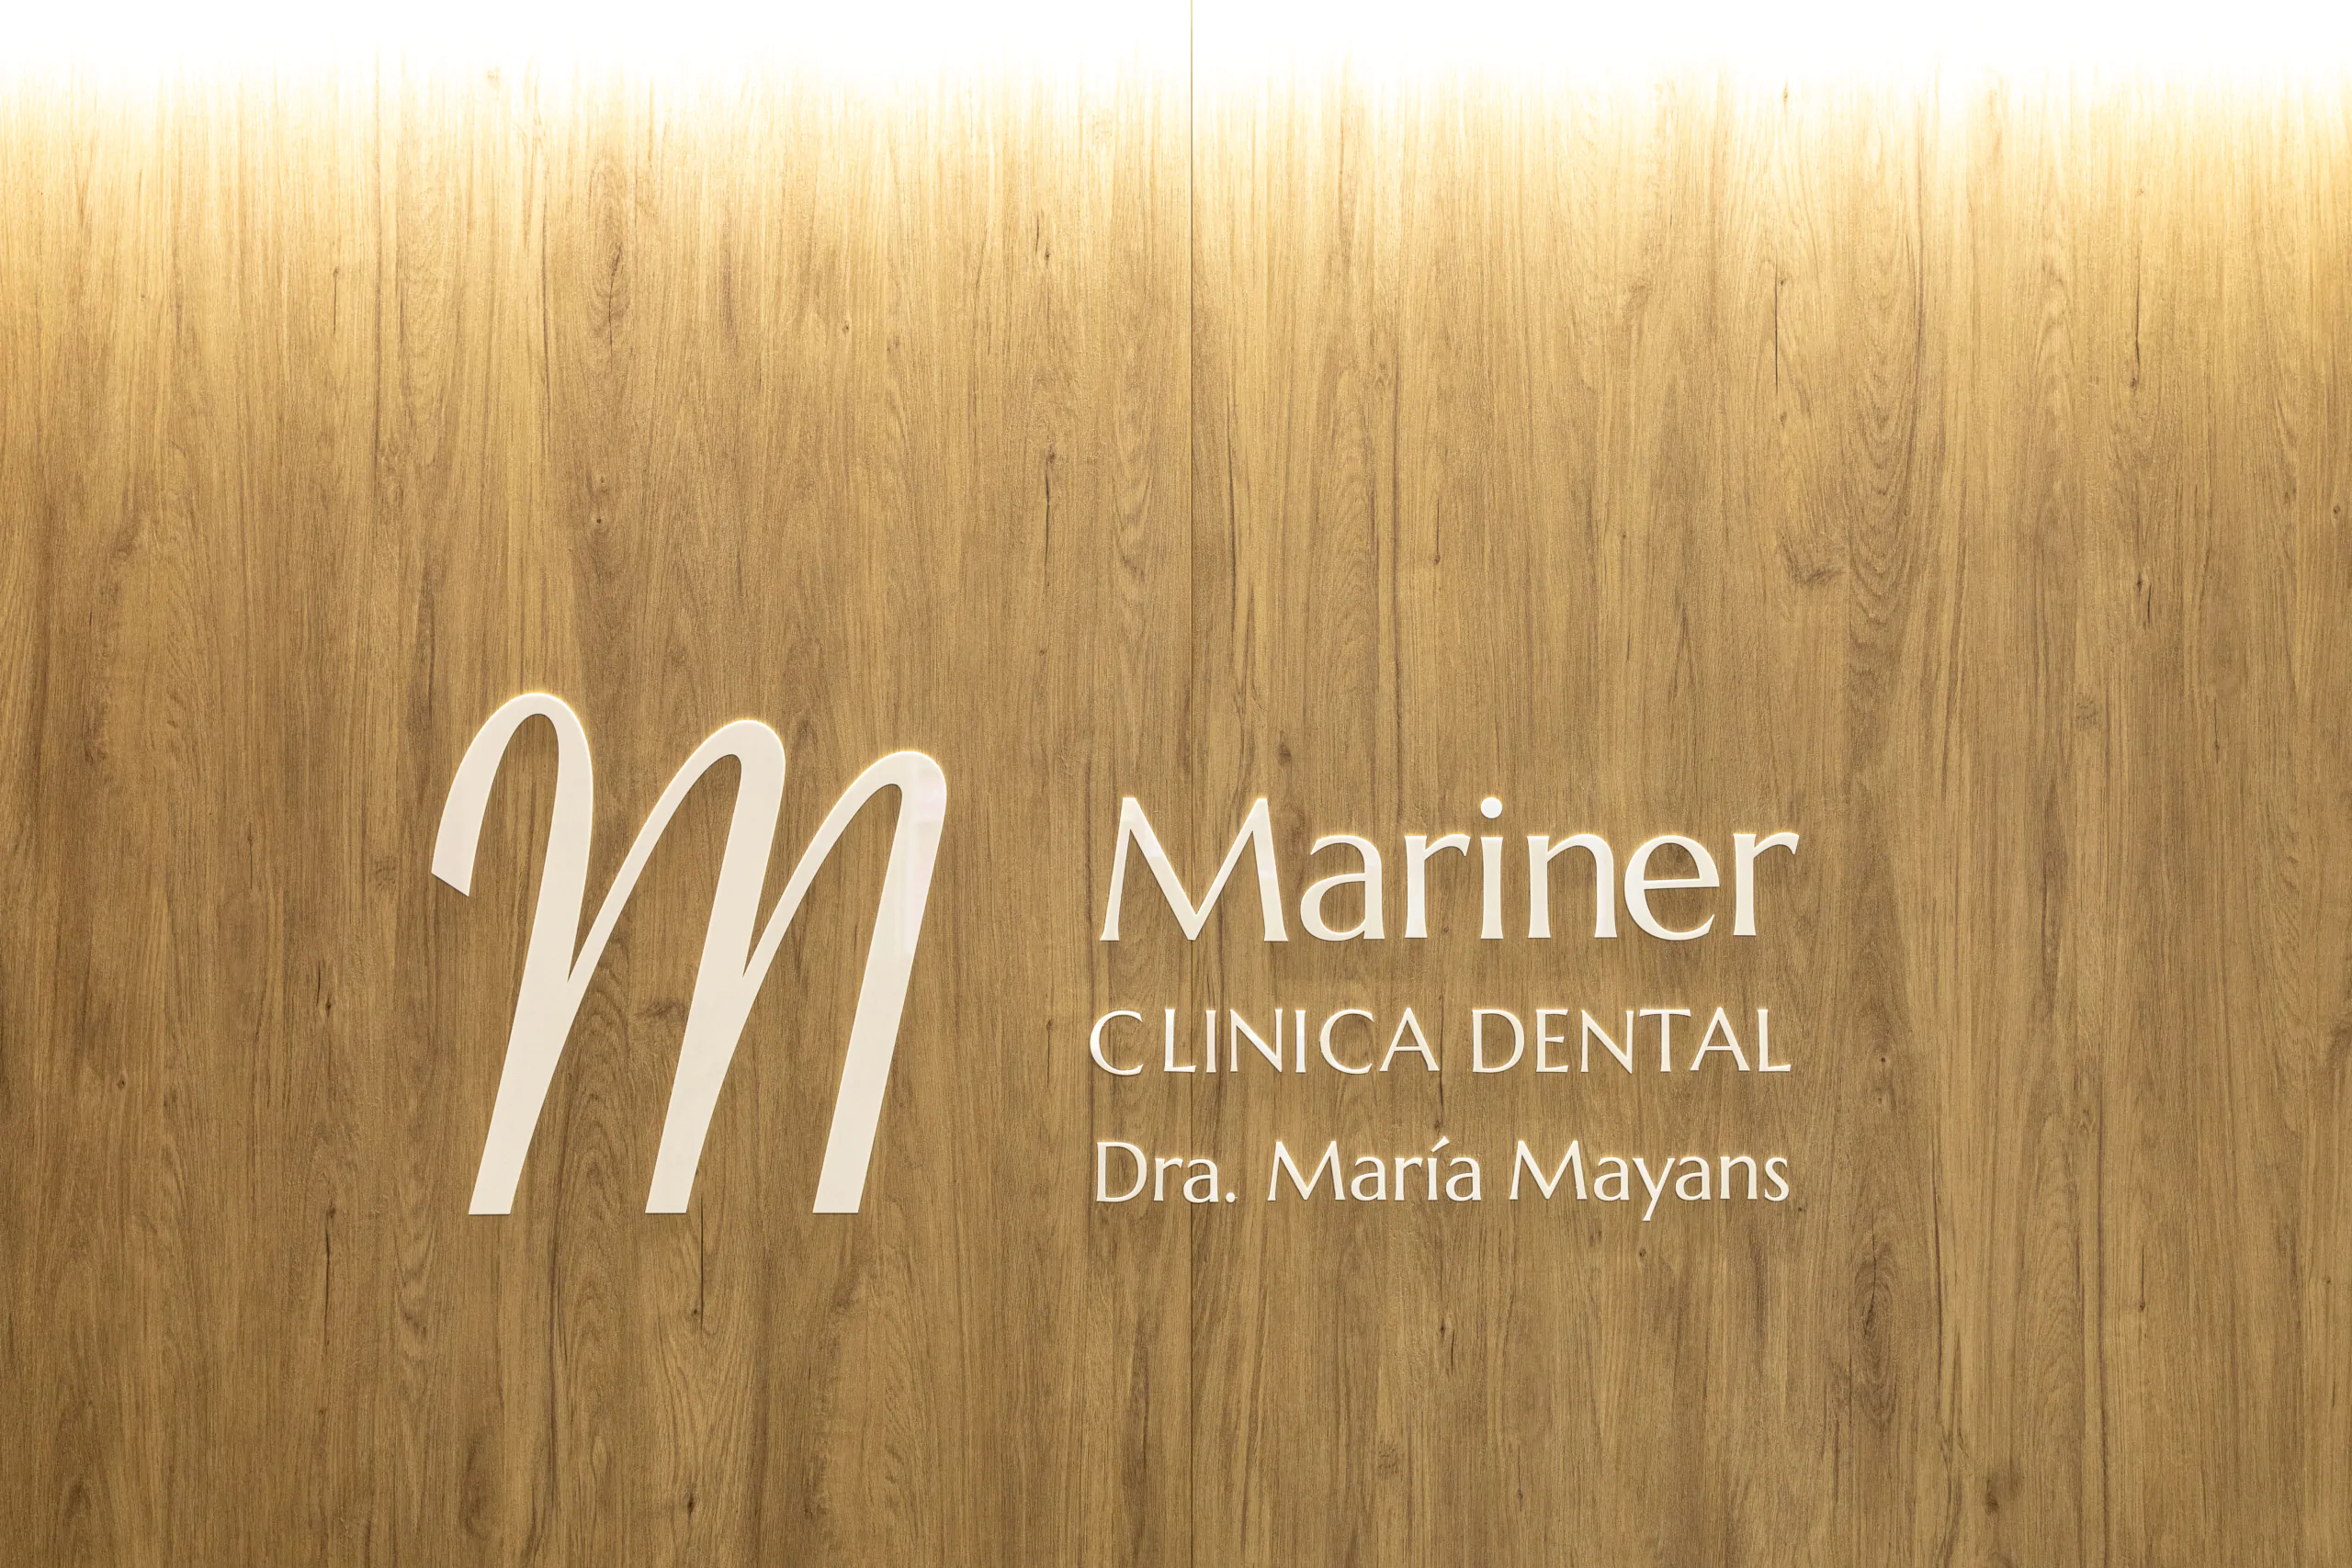 Diseño de logo dentista con una M grande acabado en blanco